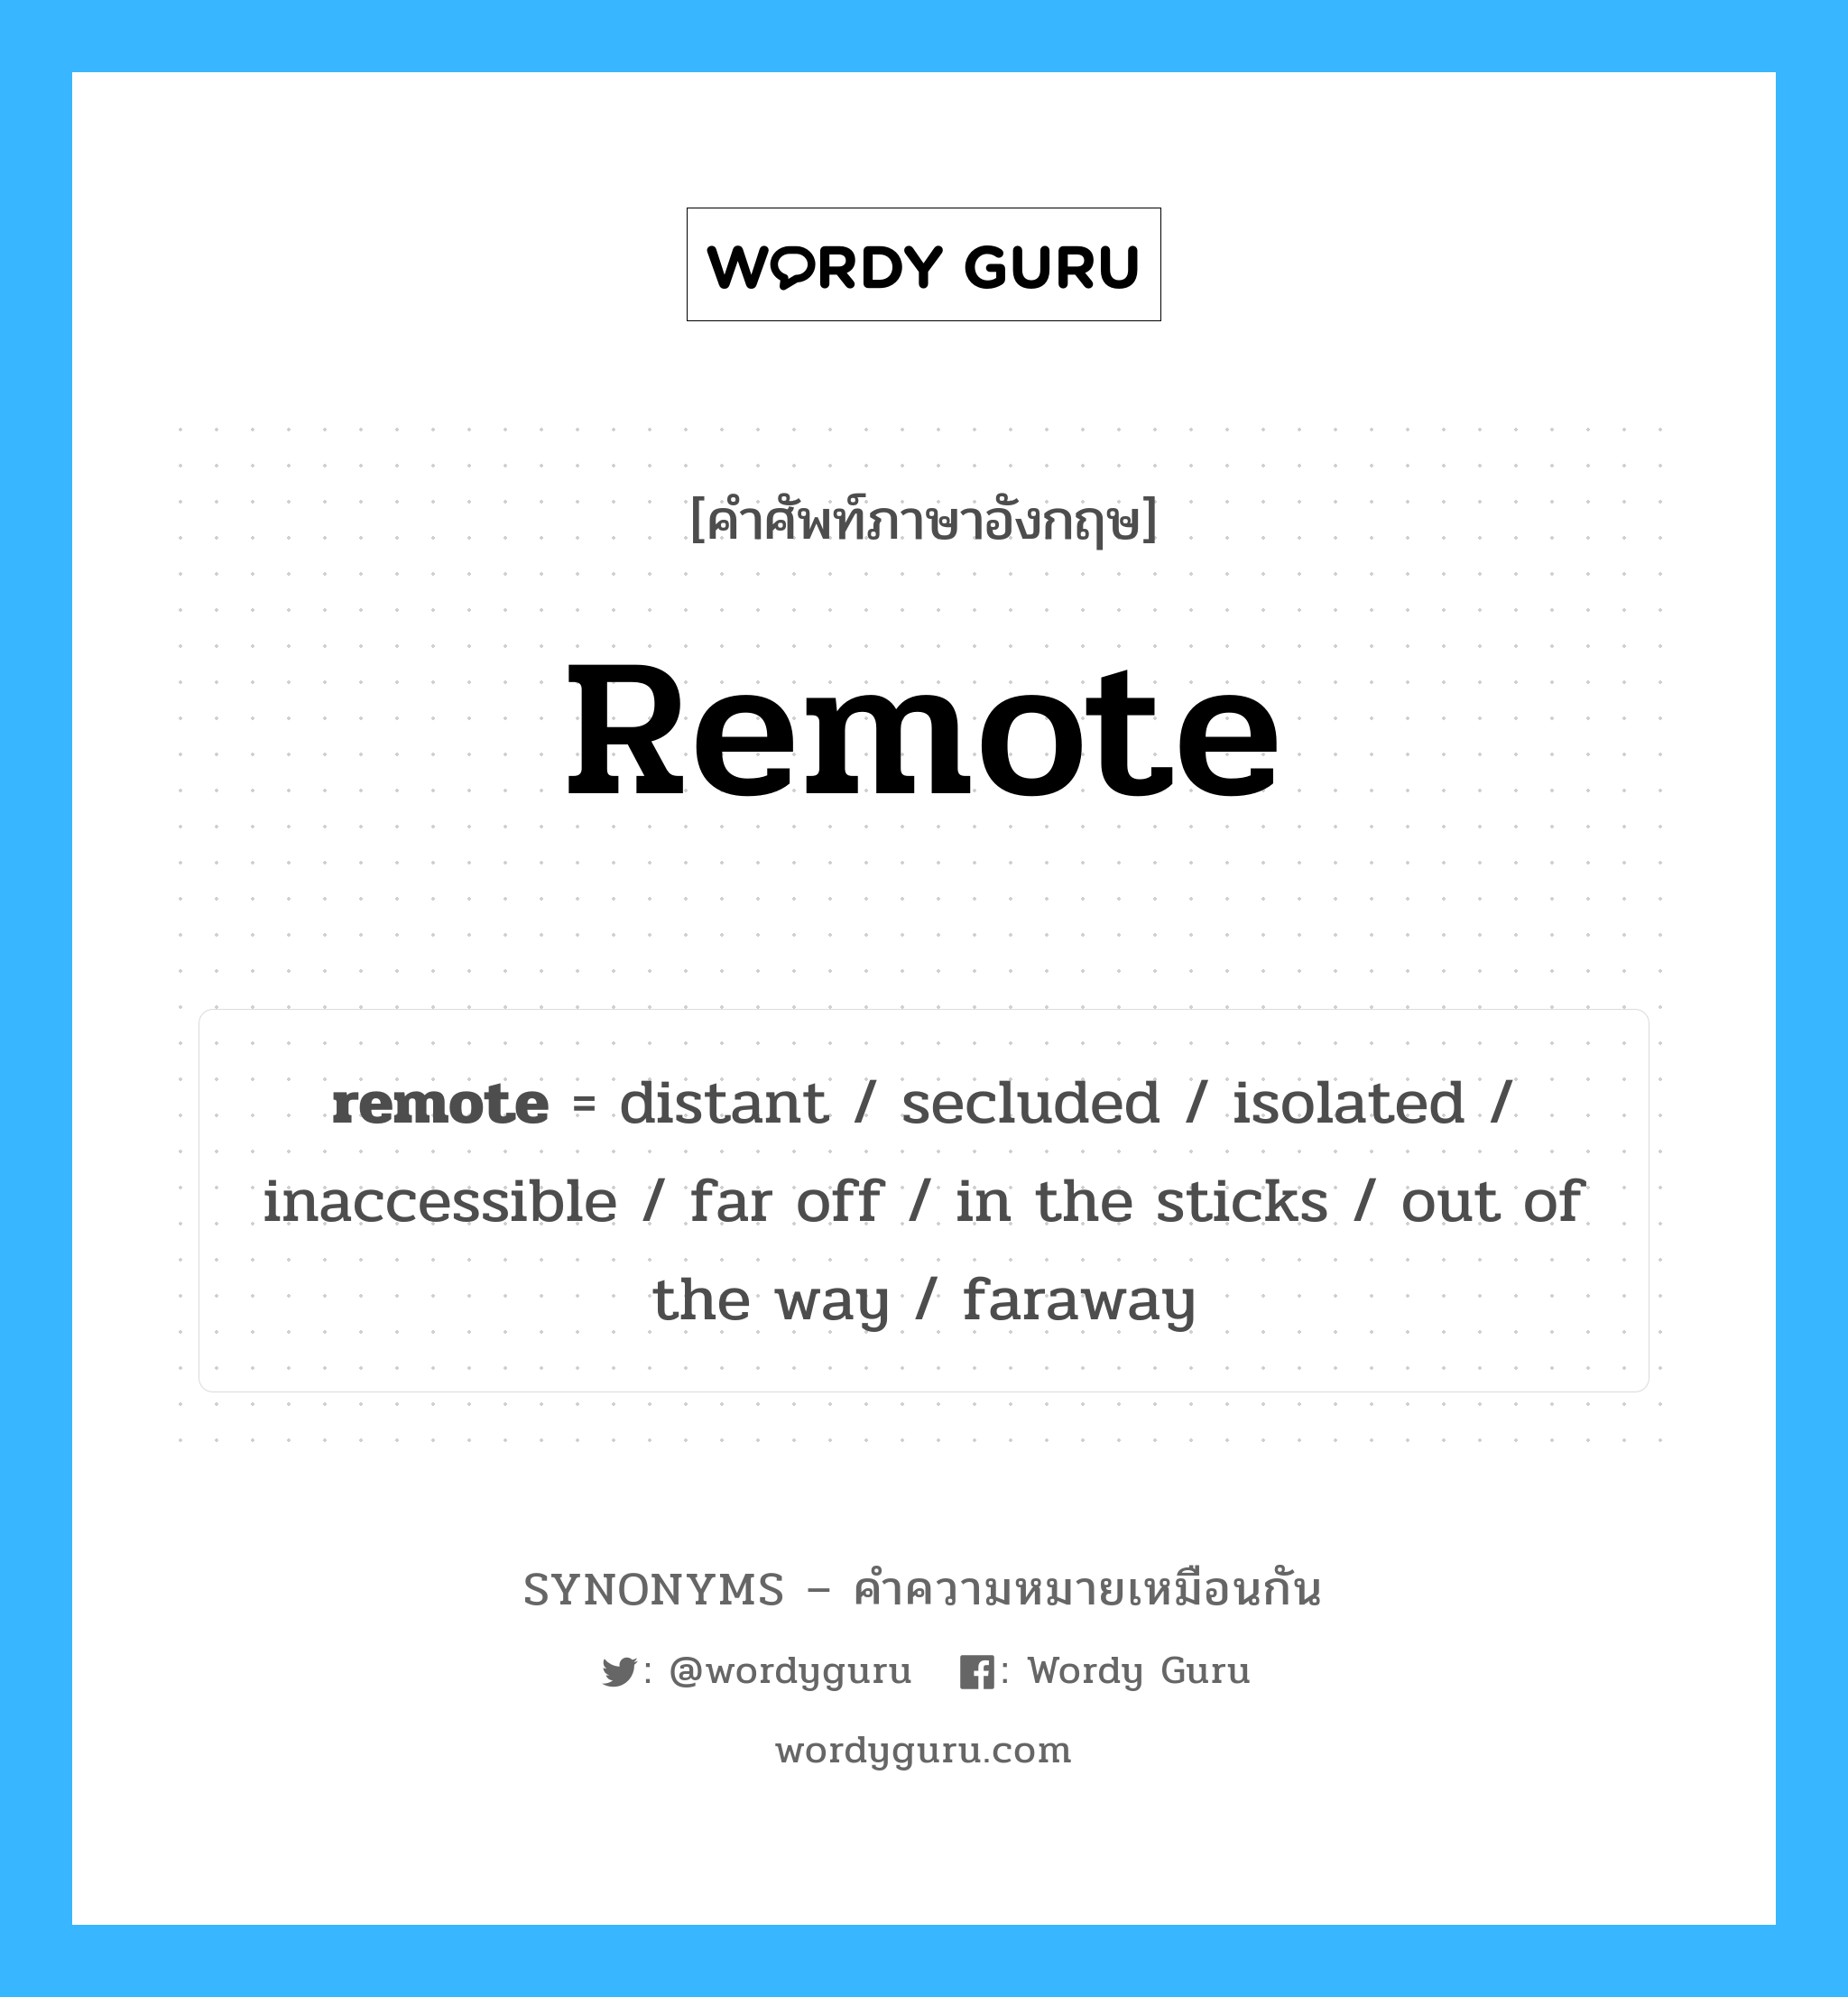 inaccessible เป็นหนึ่งใน remote และมีคำอื่น ๆ อีกดังนี้, คำศัพท์ภาษาอังกฤษ inaccessible ความหมายคล้ายกันกับ remote แปลว่า ไม่สามารถเข้าถึง หมวด remote